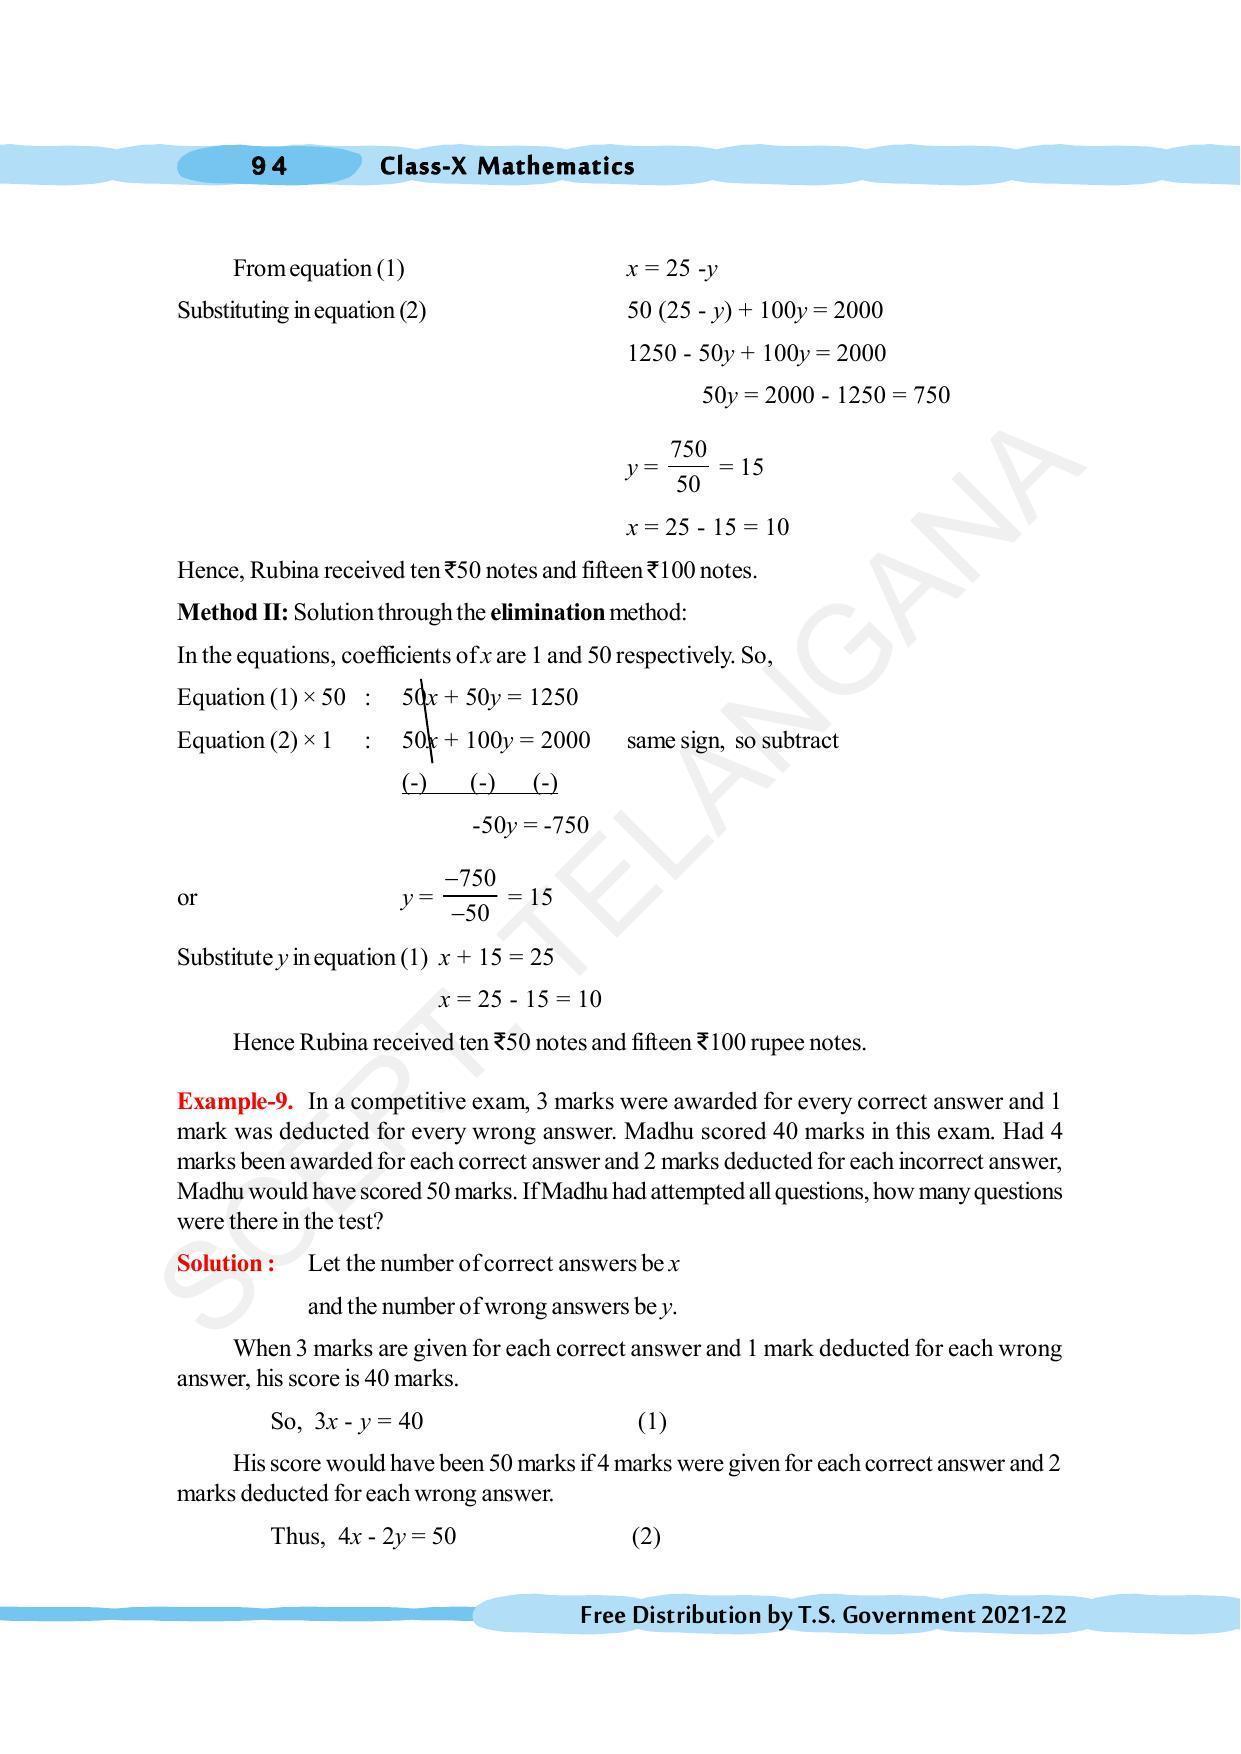 TS SCERT Class 10 Maths (English Medium) Text Book - Page 104